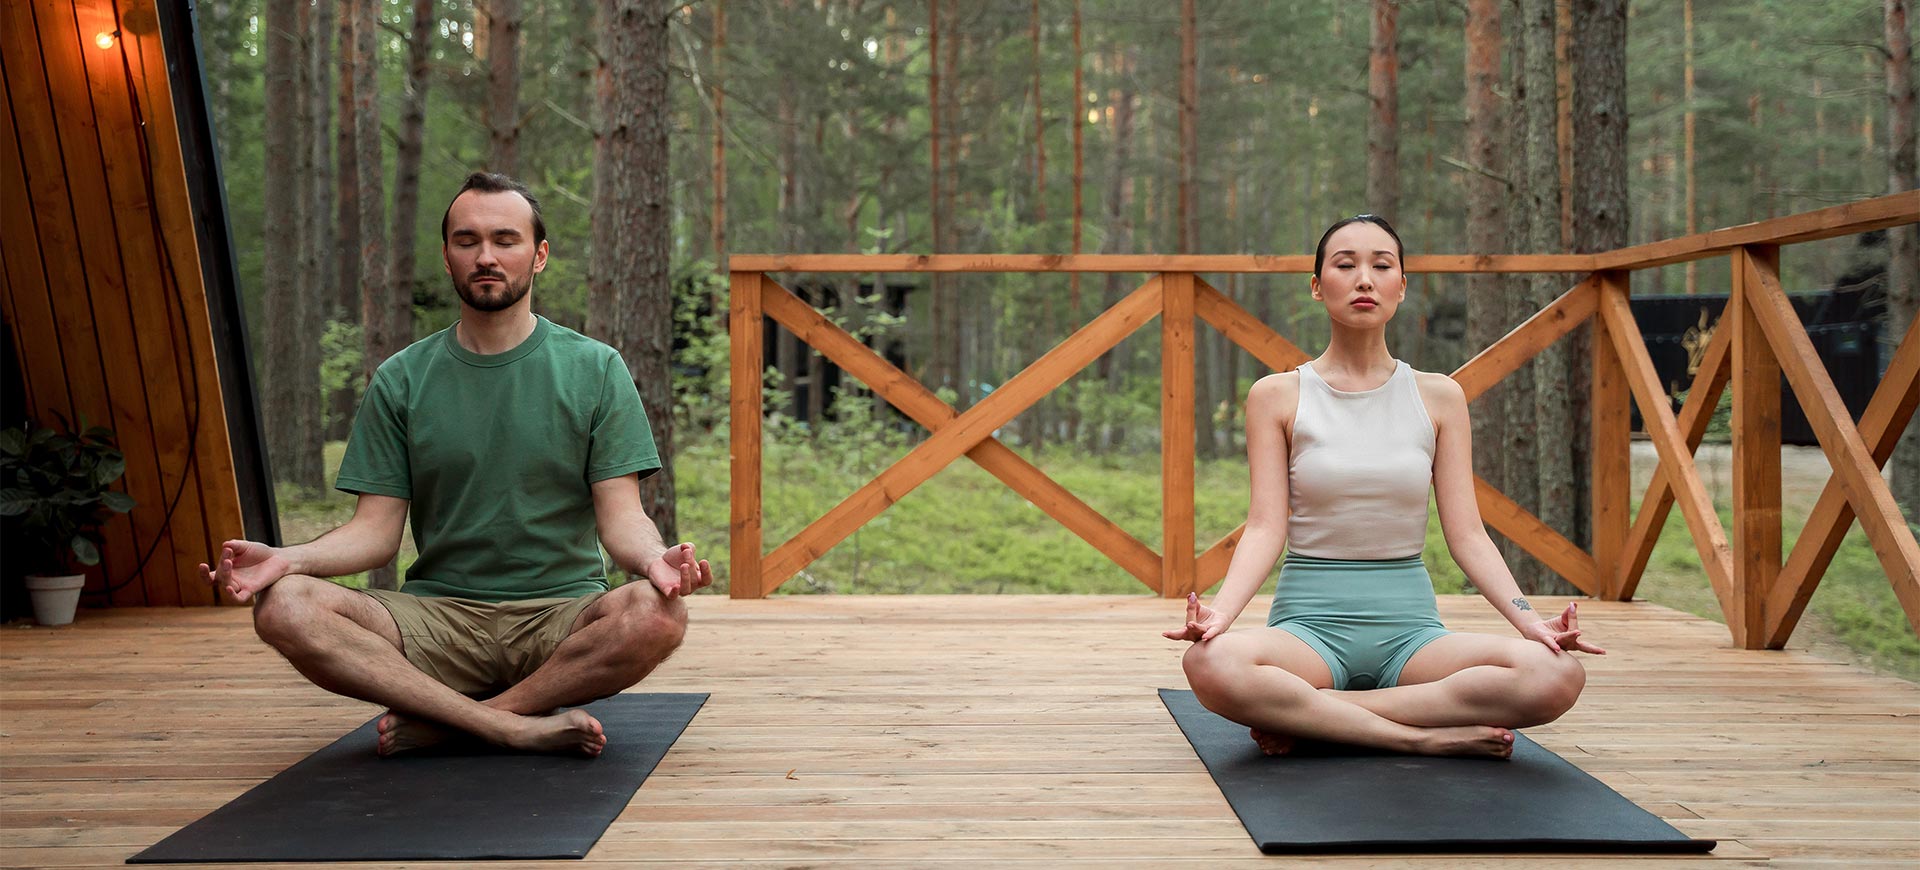 The Heart of Yoga: Asana, Pranayama, Mantra, and Meditation with